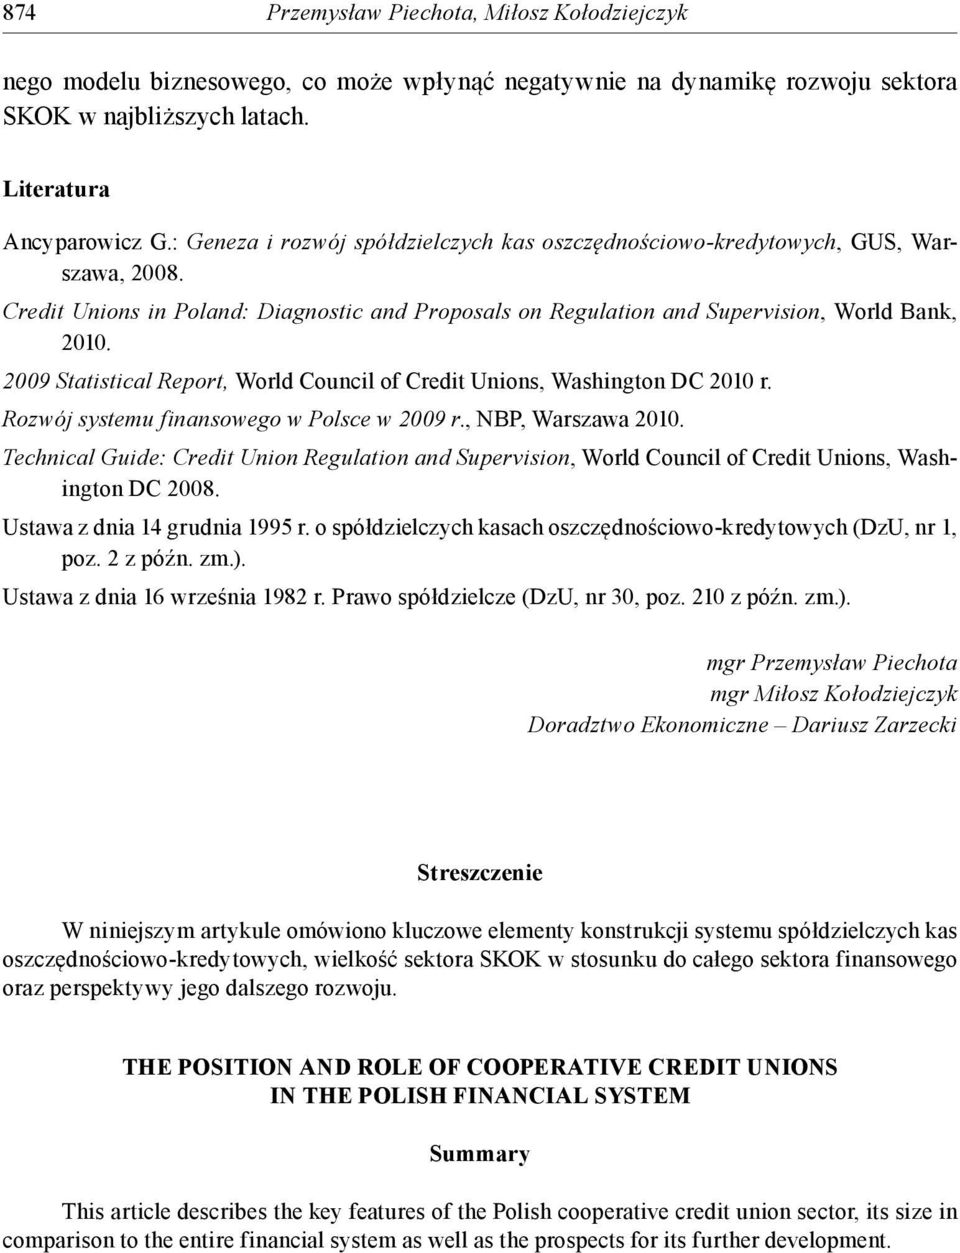 2009 Statistical Report, World Council of Credit Unions, Washington DC 2010 r. Rozwój systemu finansowego w Polsce w 2009 r., NBP, Warszawa 2010.